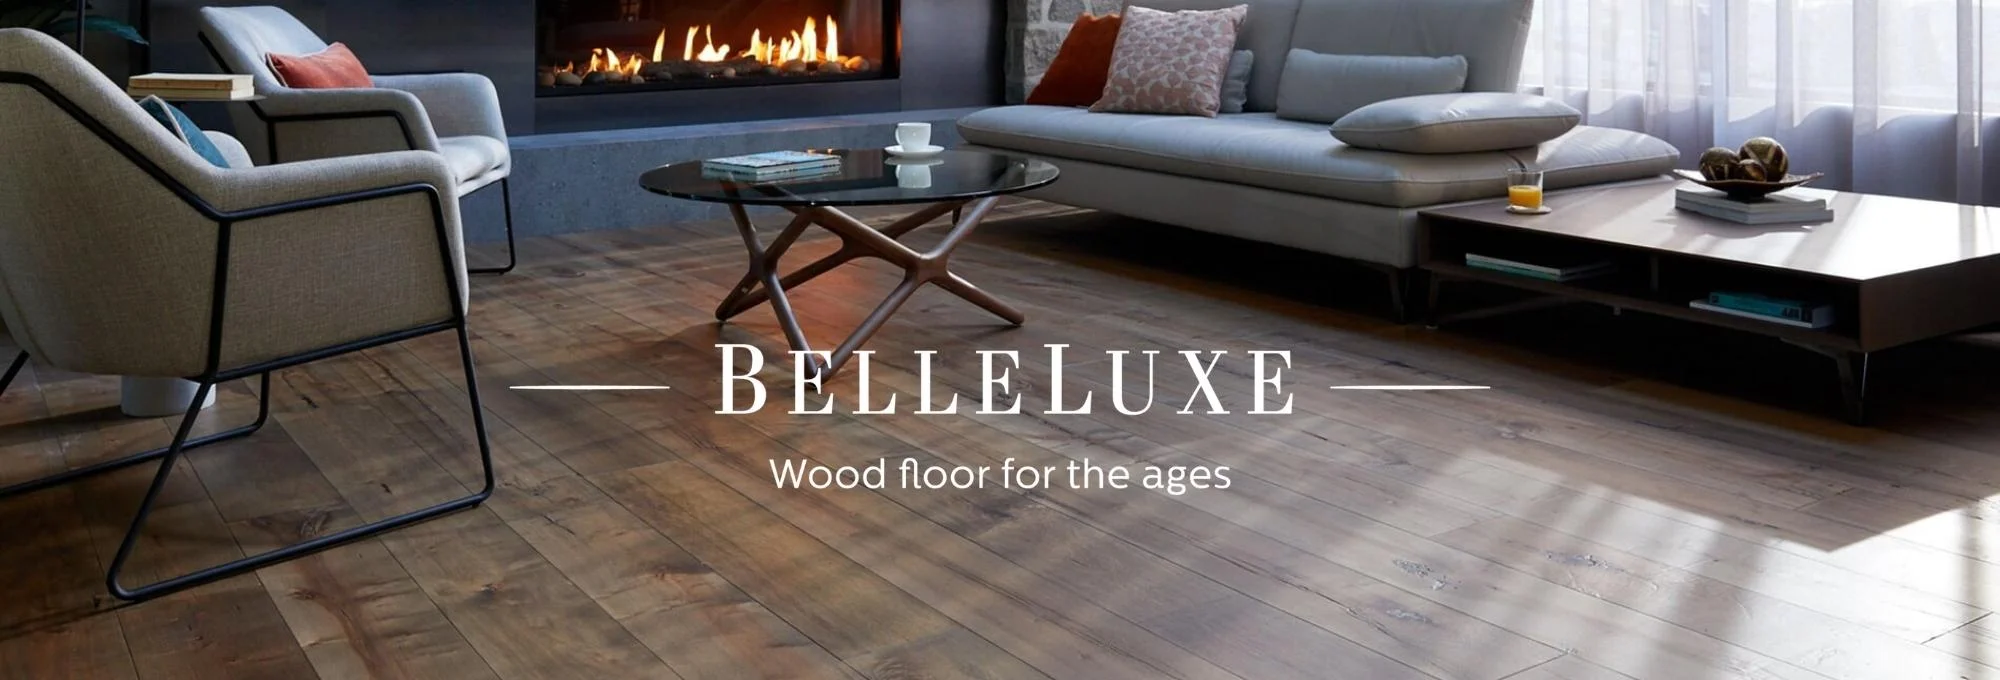 BelleLuxe hardwood flooring